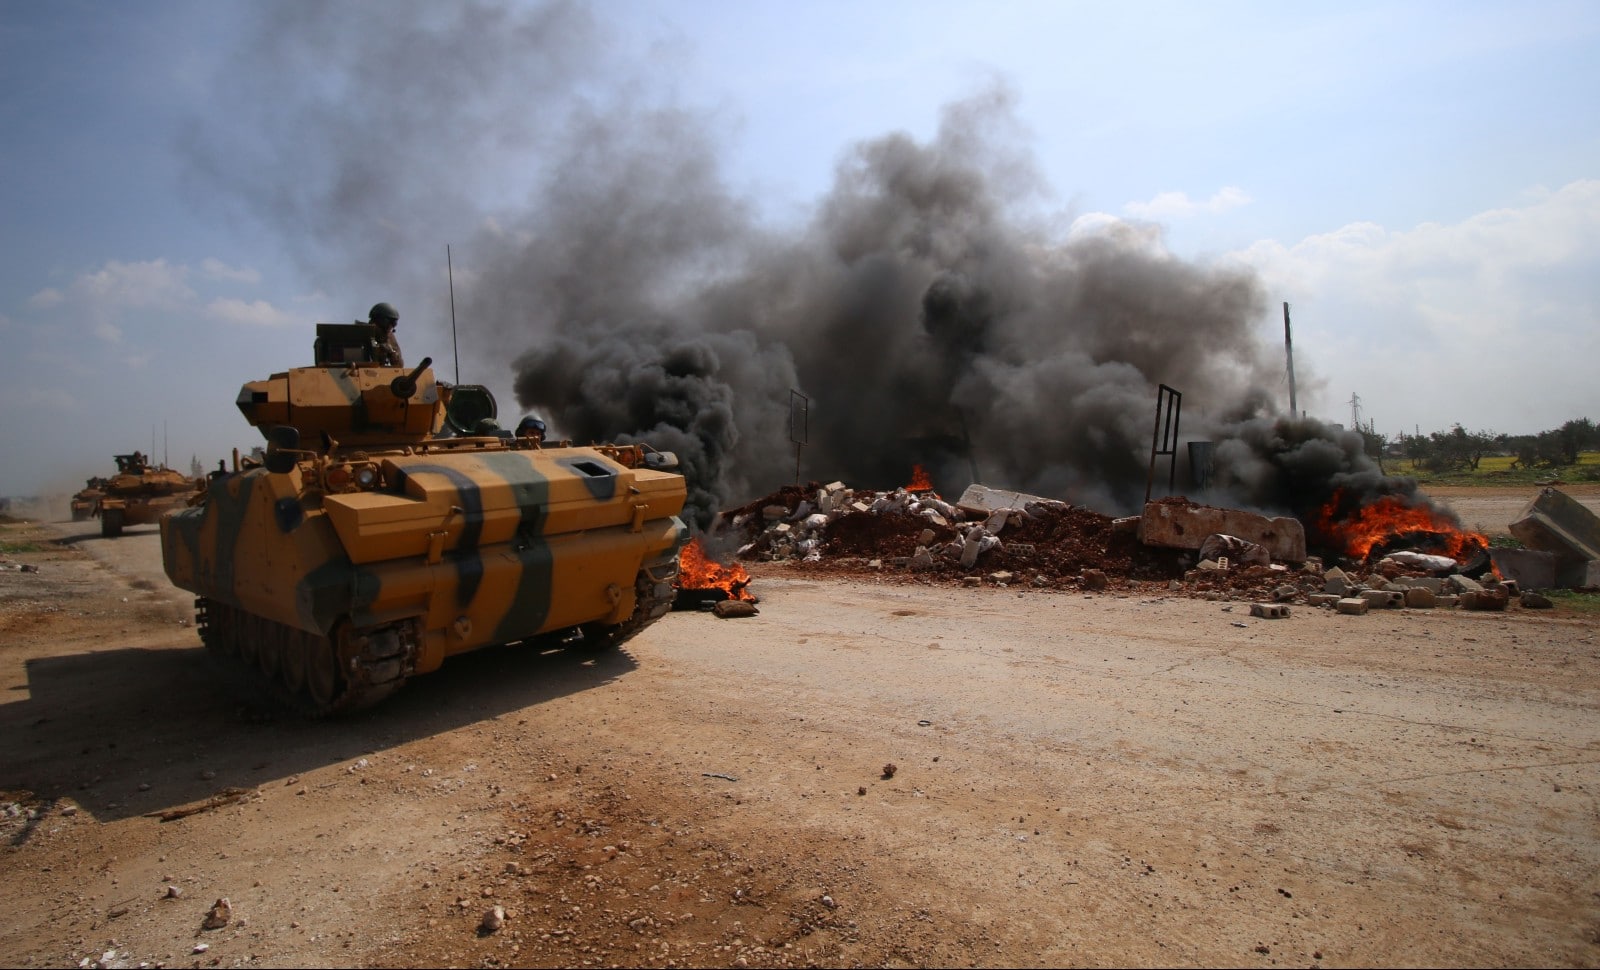 Opposition au régime de Bachar Al Assad brûlant des pneus suite au blocage de l'autoroute M4 le 5 mars 2020.
© ASAAD AL ASAAD/ SIPA